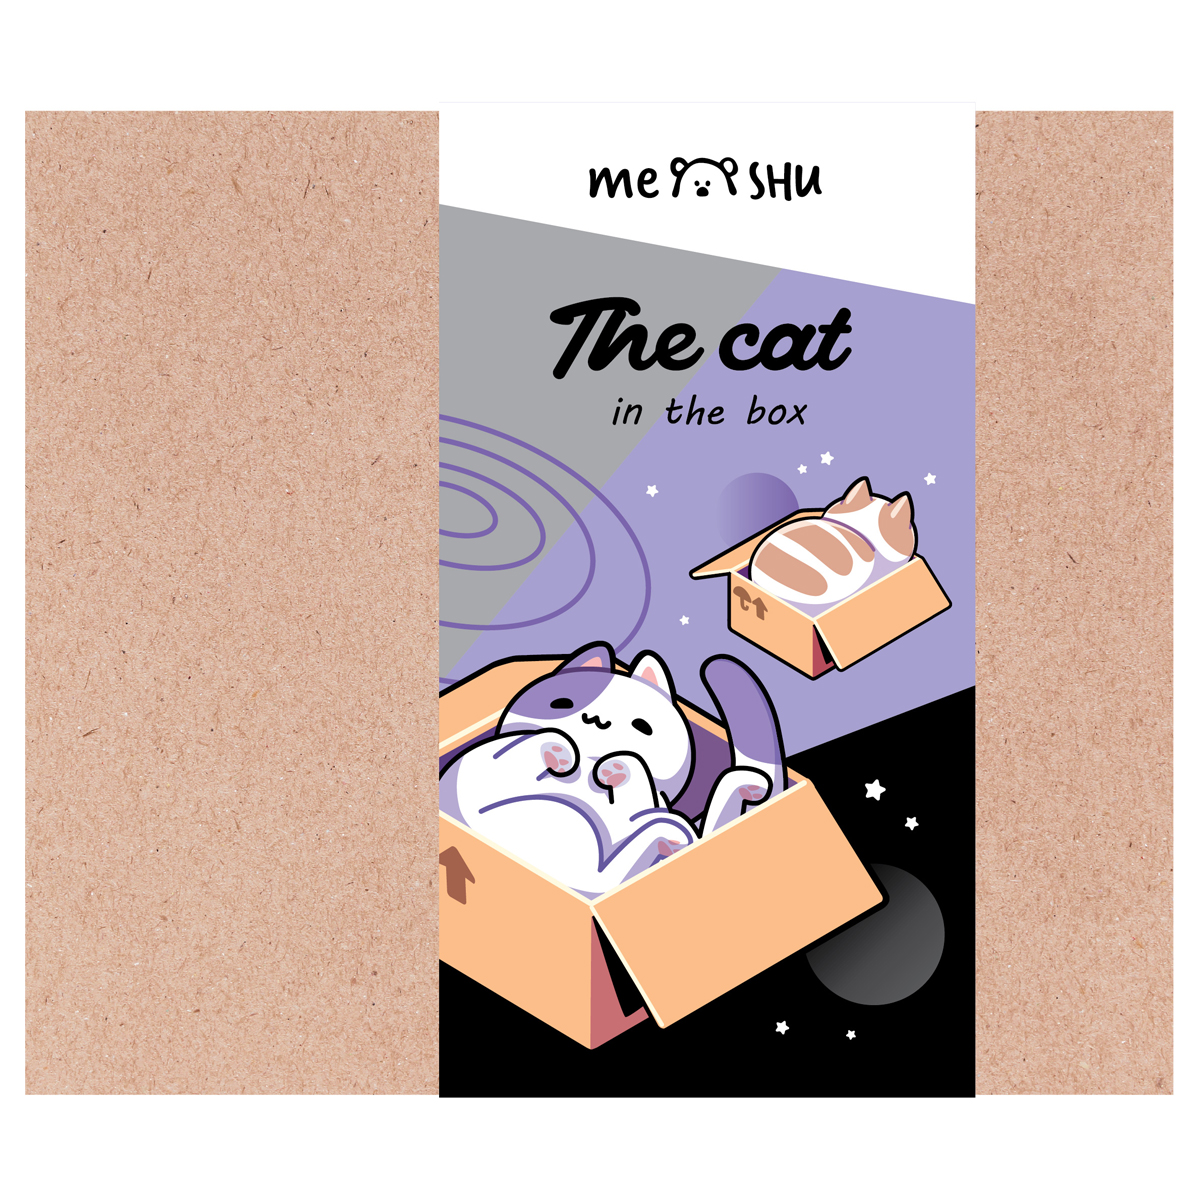     MESHU "Cat in box", 35  